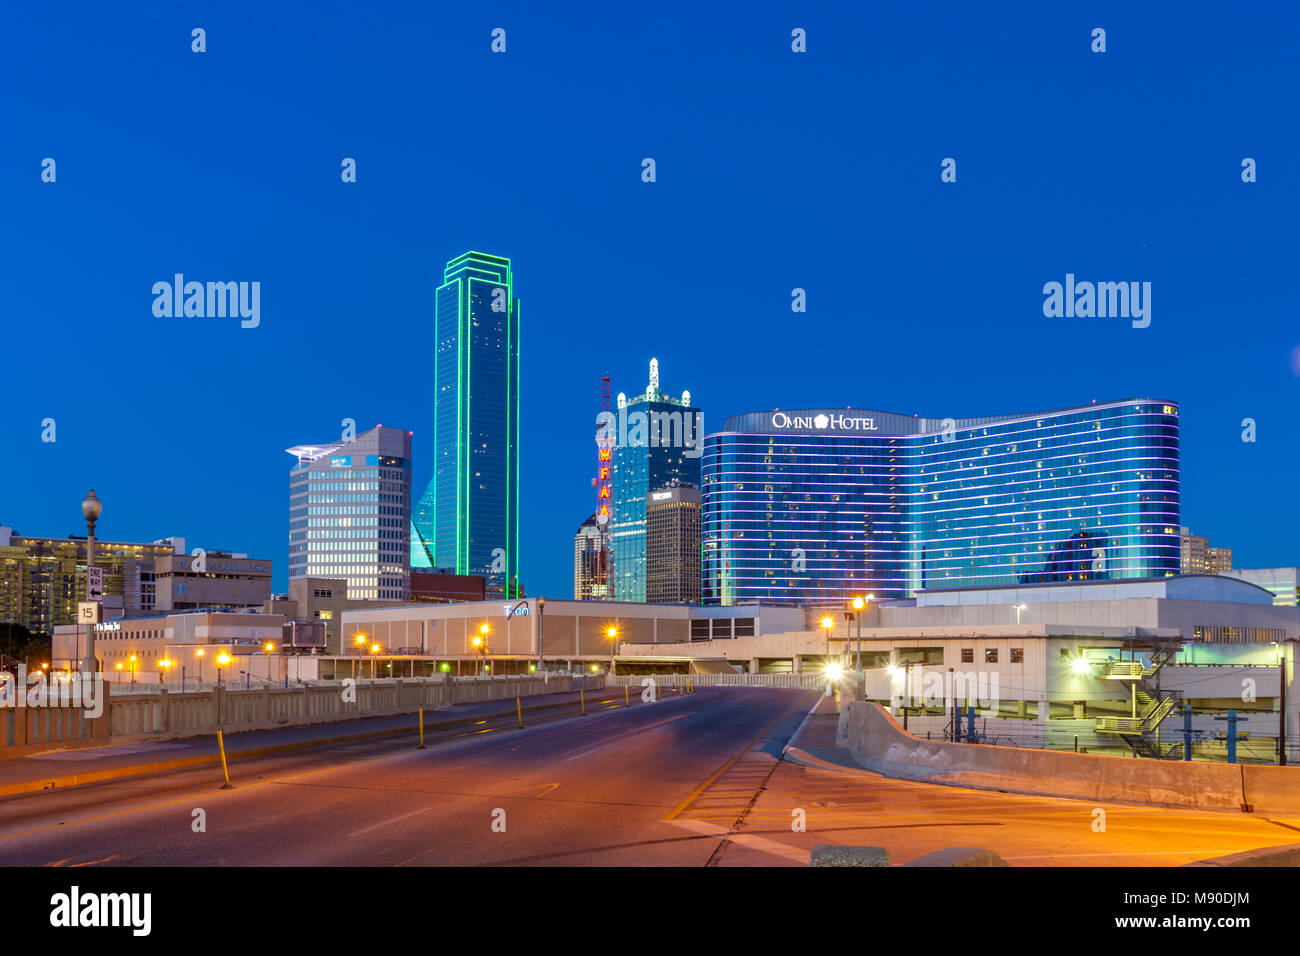 DALLAS, TX - Dezember 10, 2017 - Downtown Dallas Skyline bei Nacht mit beleuchtetem Glas Gebäude aus Houston Street gesehen Stockfoto